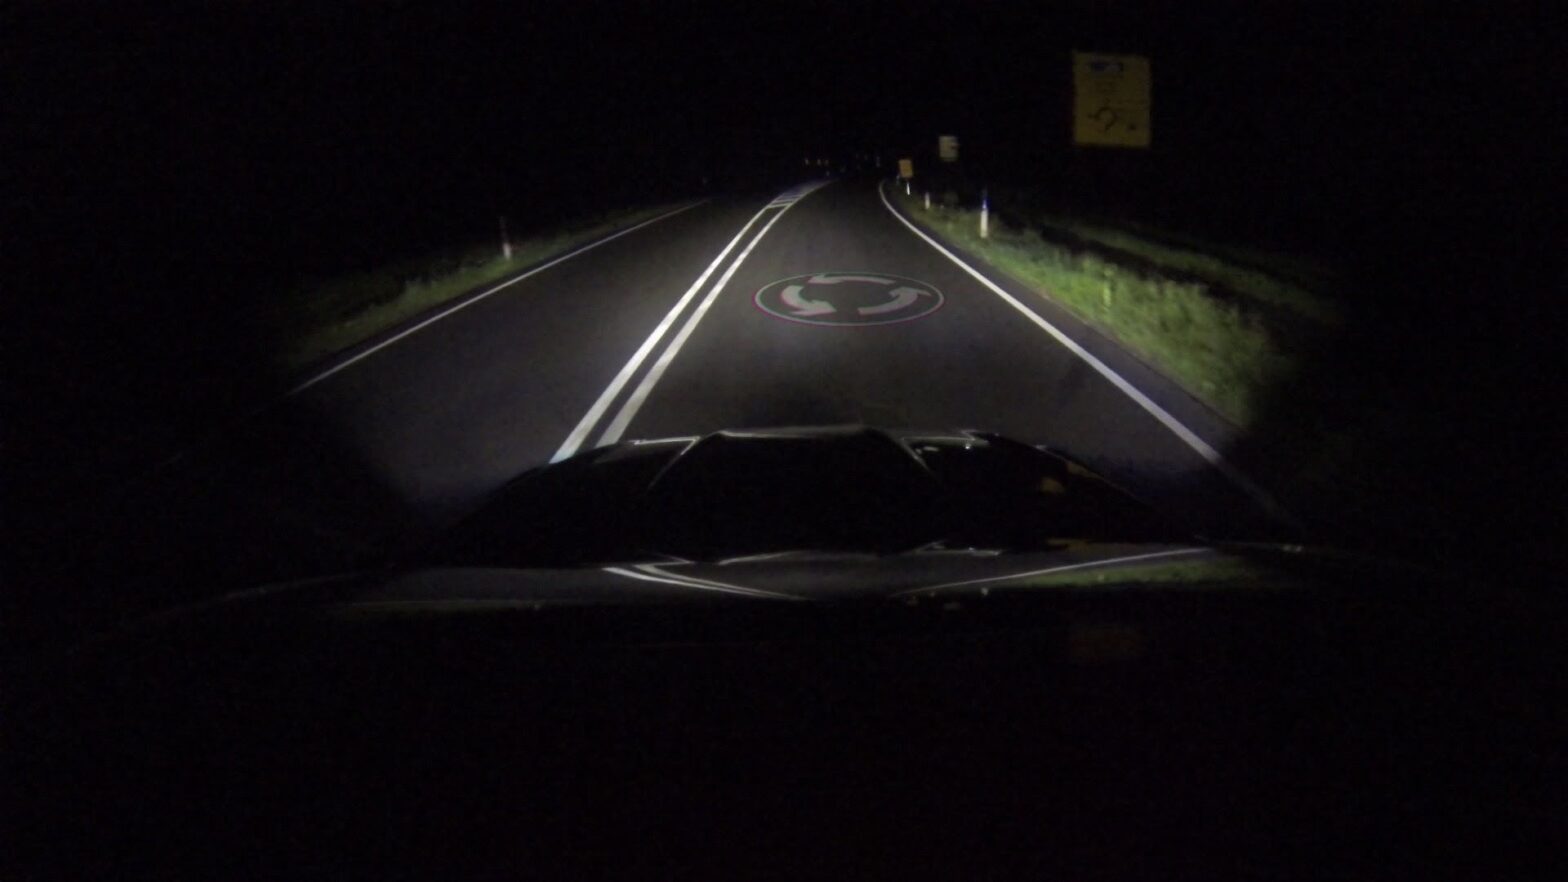 quand les phares projettent des informations utiles en conduite nocturne